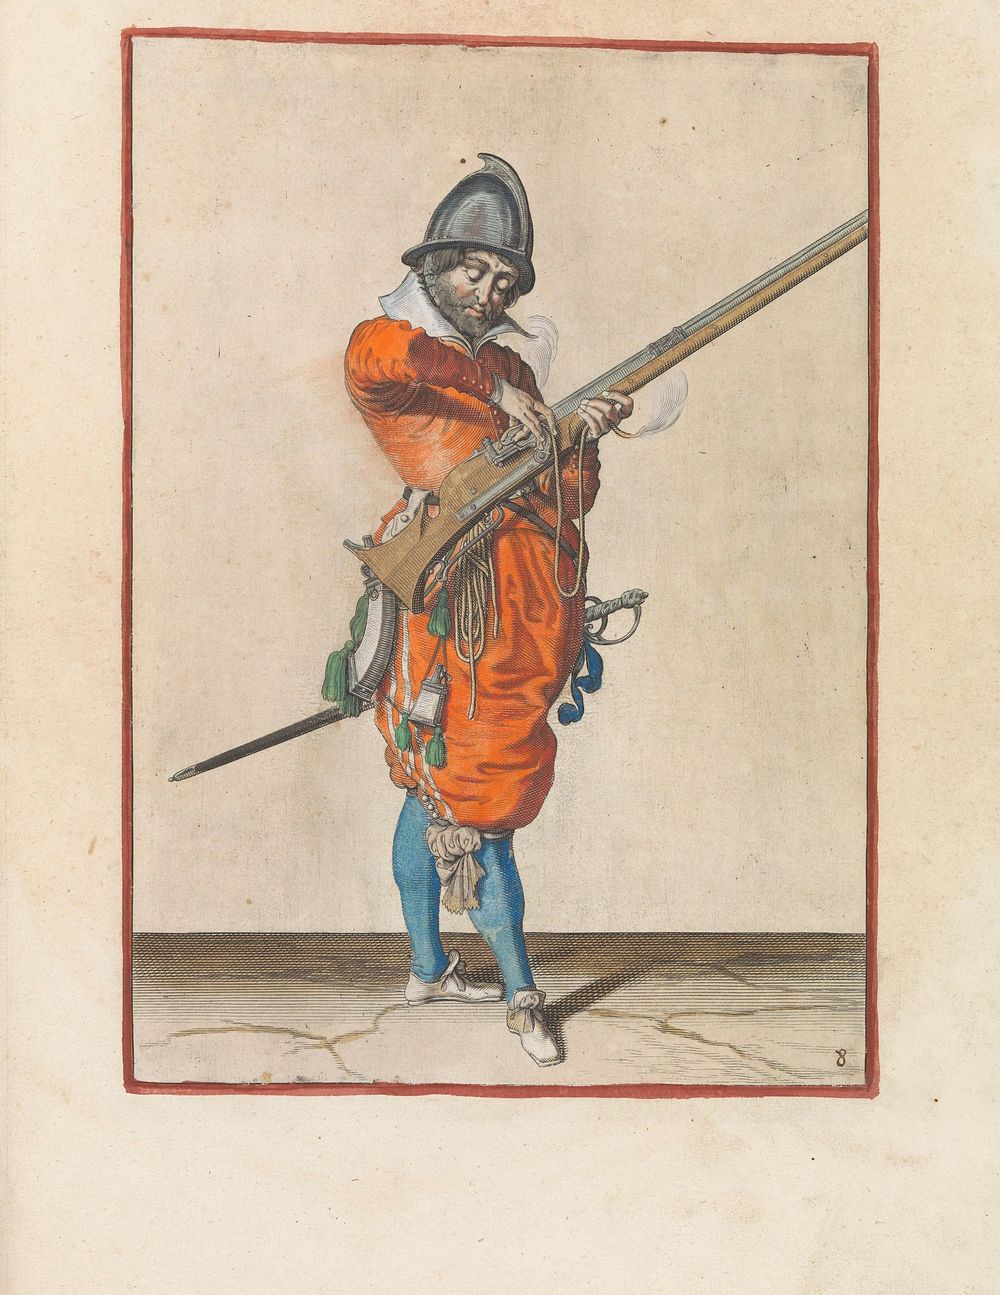 Soldaat die de lont op de haan van zijn roer de juiste plek en vorm geeft (c. 1597 - 1607) by Jacques de Gheyn II and…